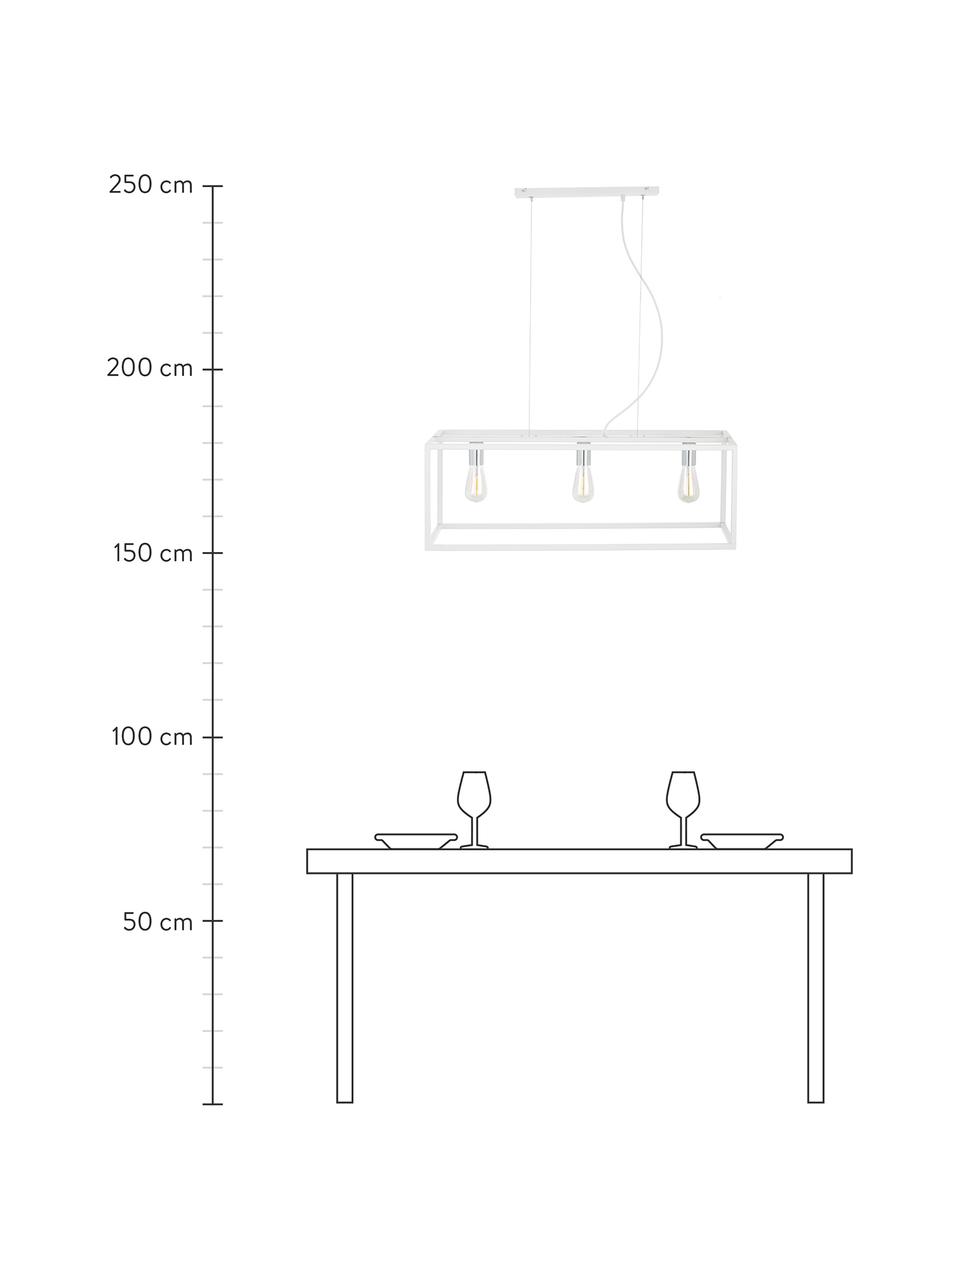 Grote hanglamp Cohen in wit, Fitting: gecoat metaal, Baldakijn: gecoat metaal, Wit, zilverkleurig, B 85 x D 29 cm